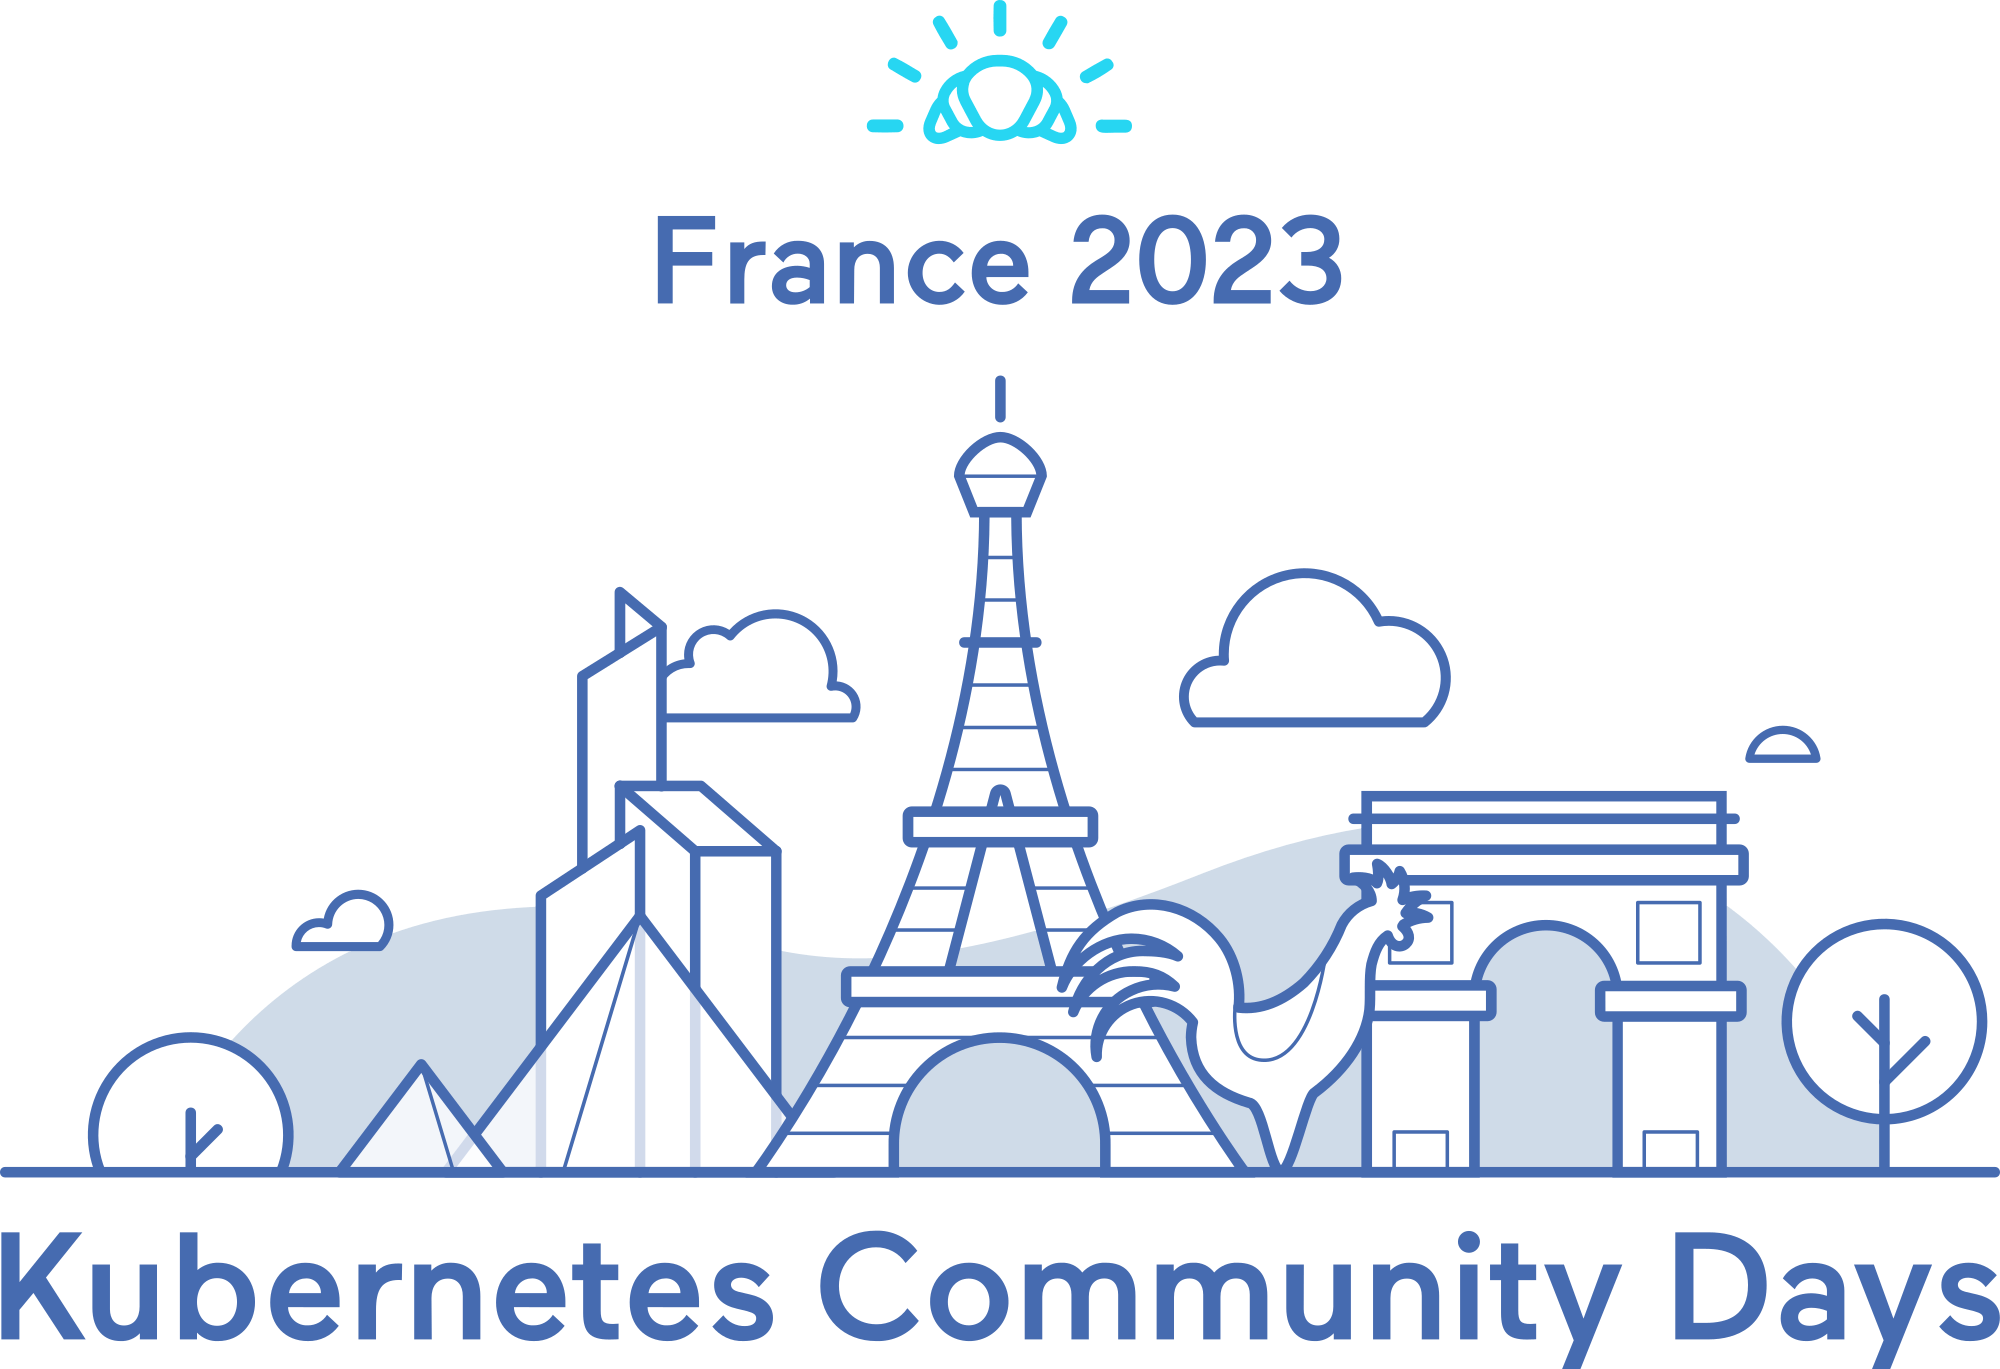 Bedrock au Kubernetes Community Days France 2023